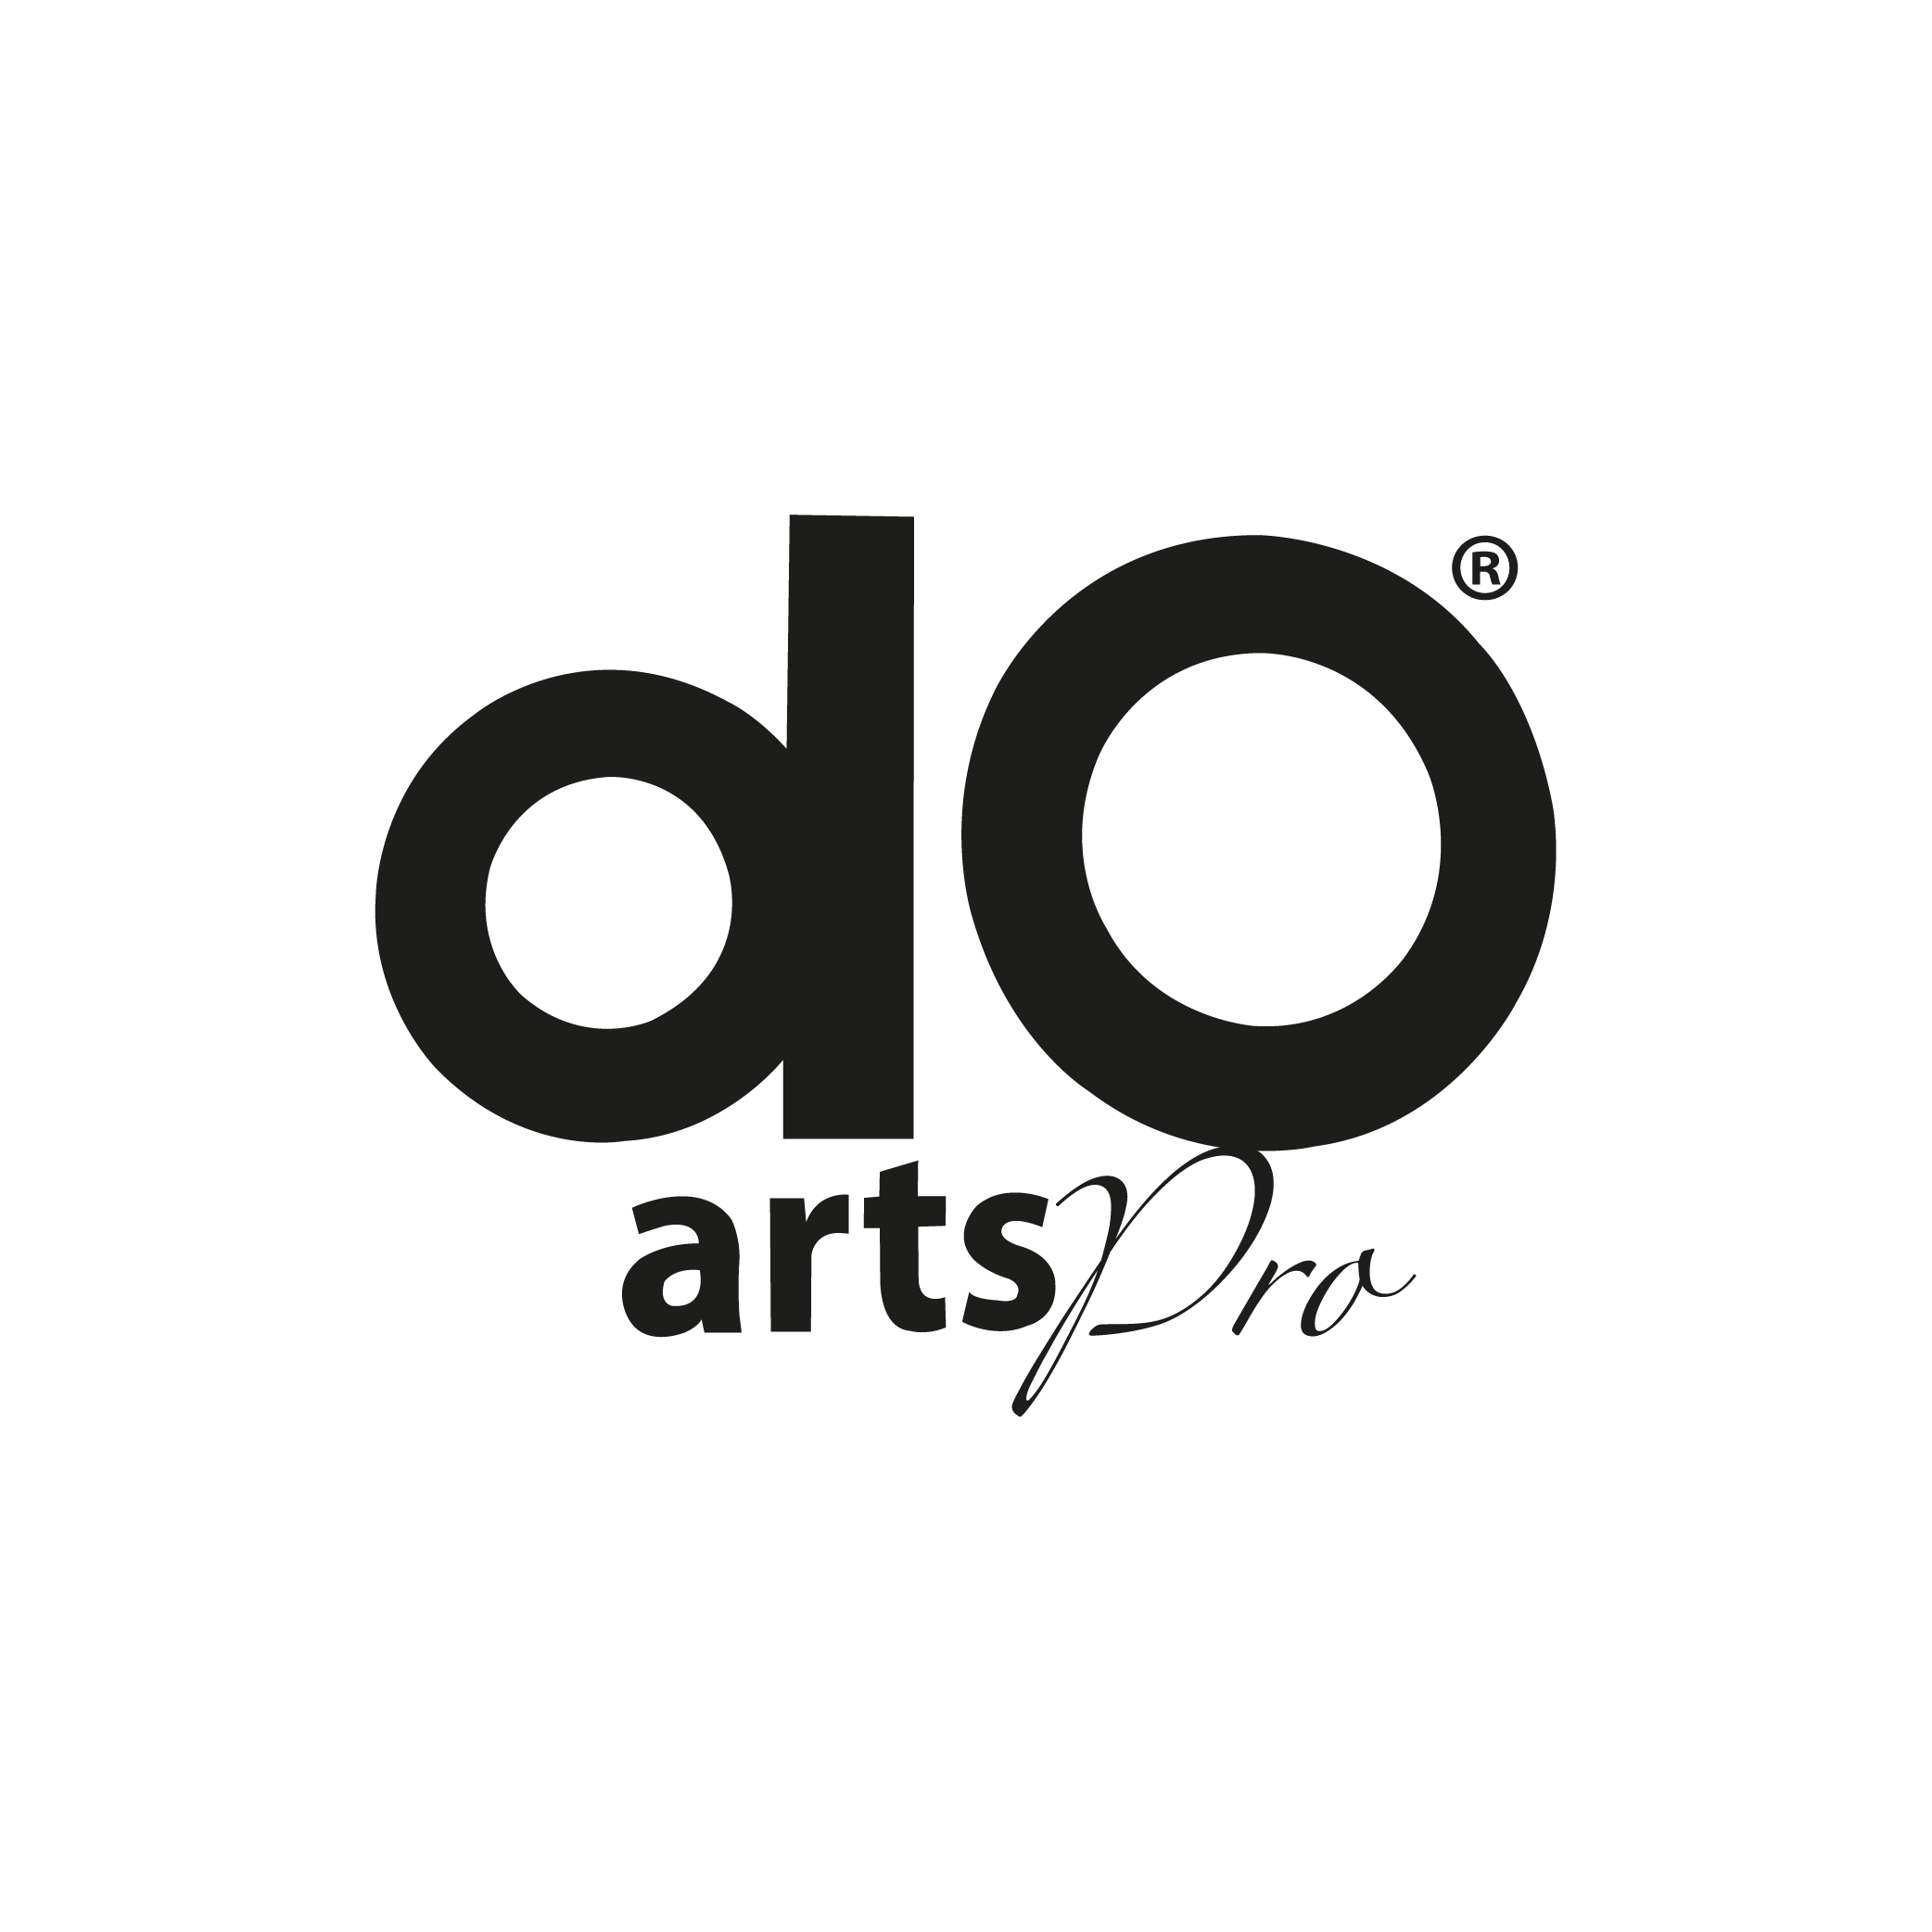 DO ARTS